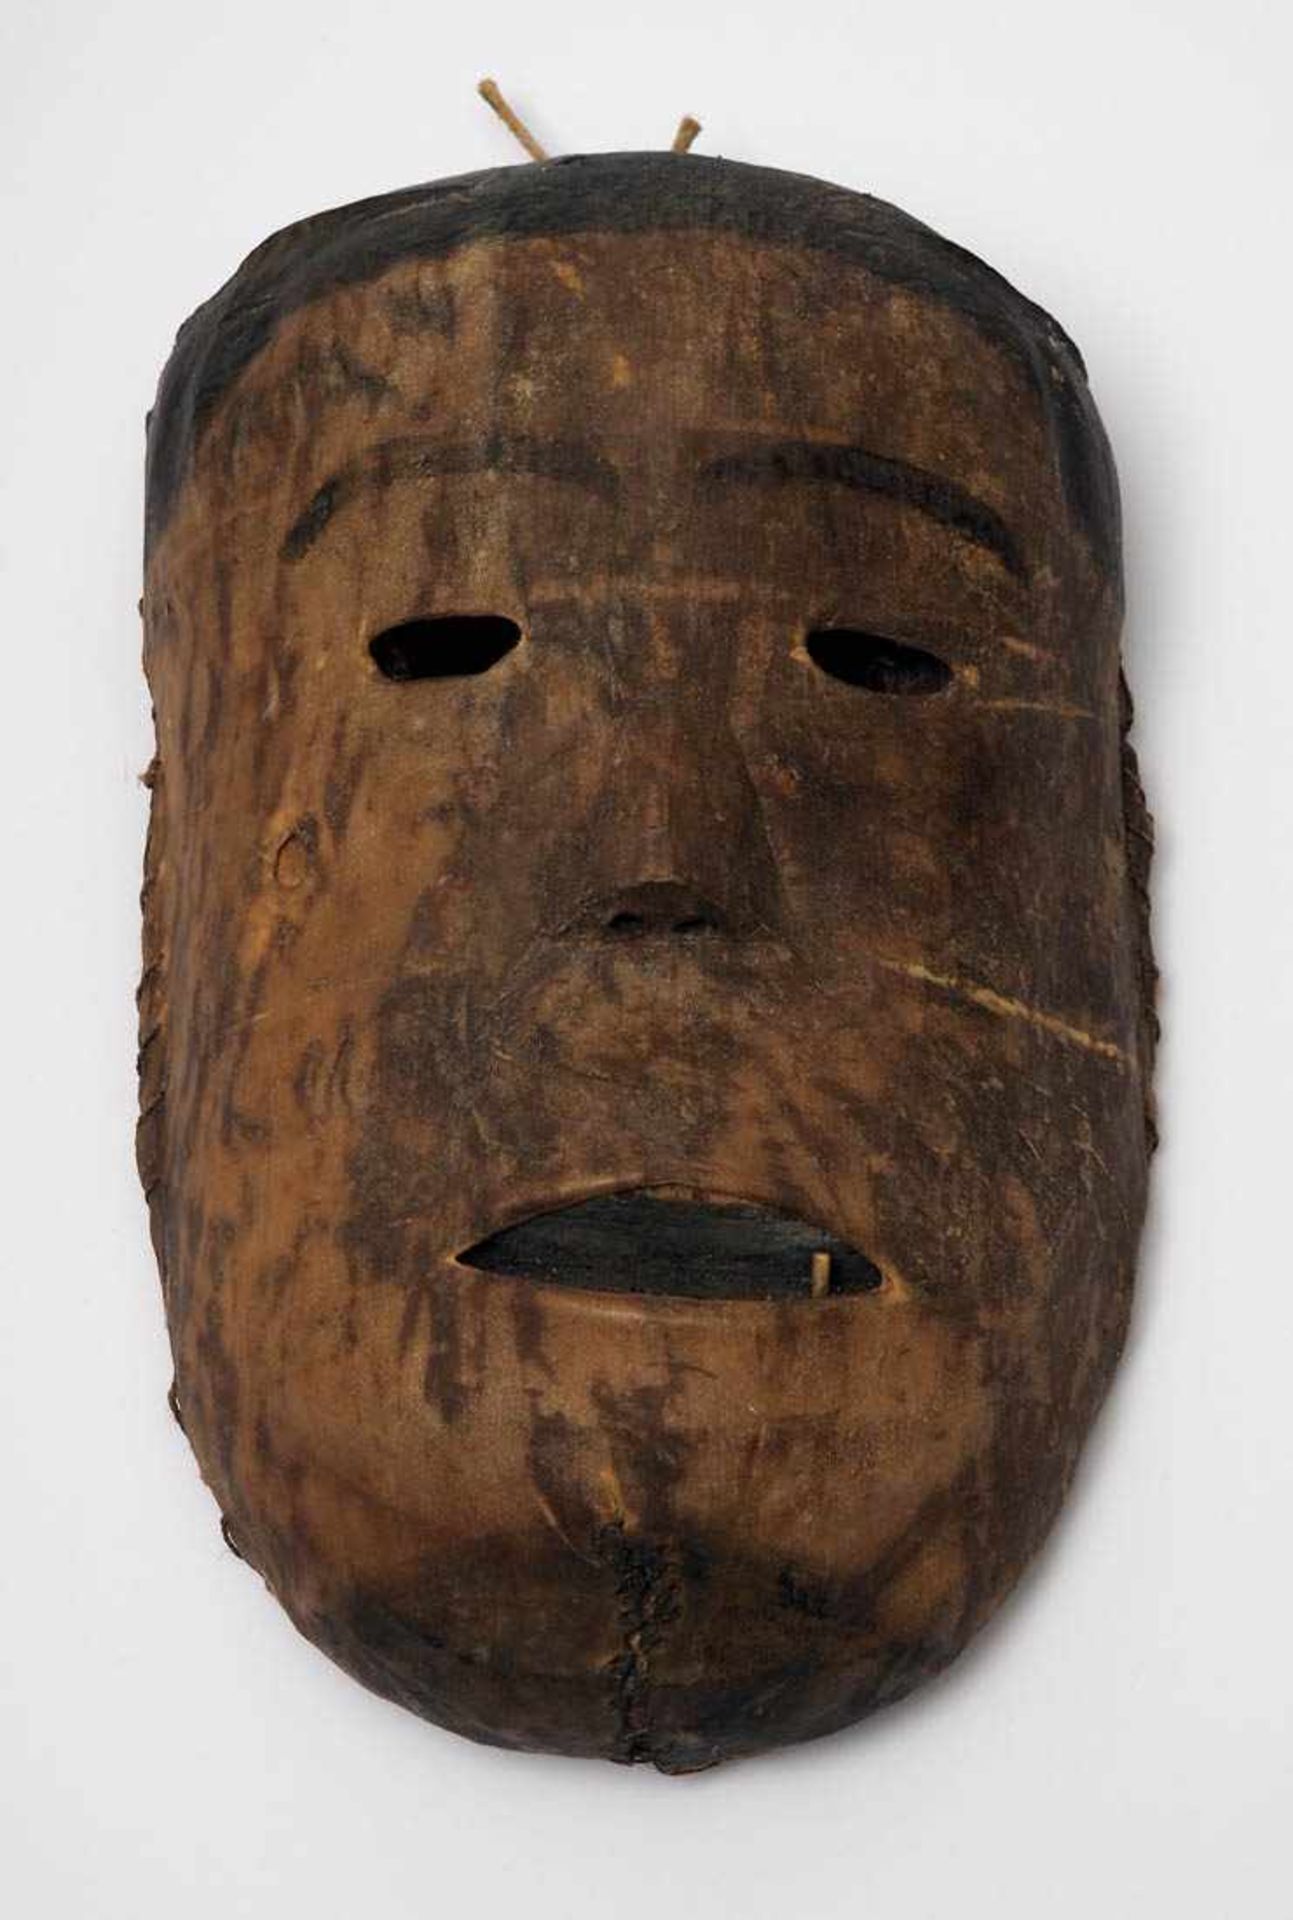 Maske, Afrika Geschnitztes Holz, mit Haut überzogen. Haare, Wimpern und Inneres des Mundes mit